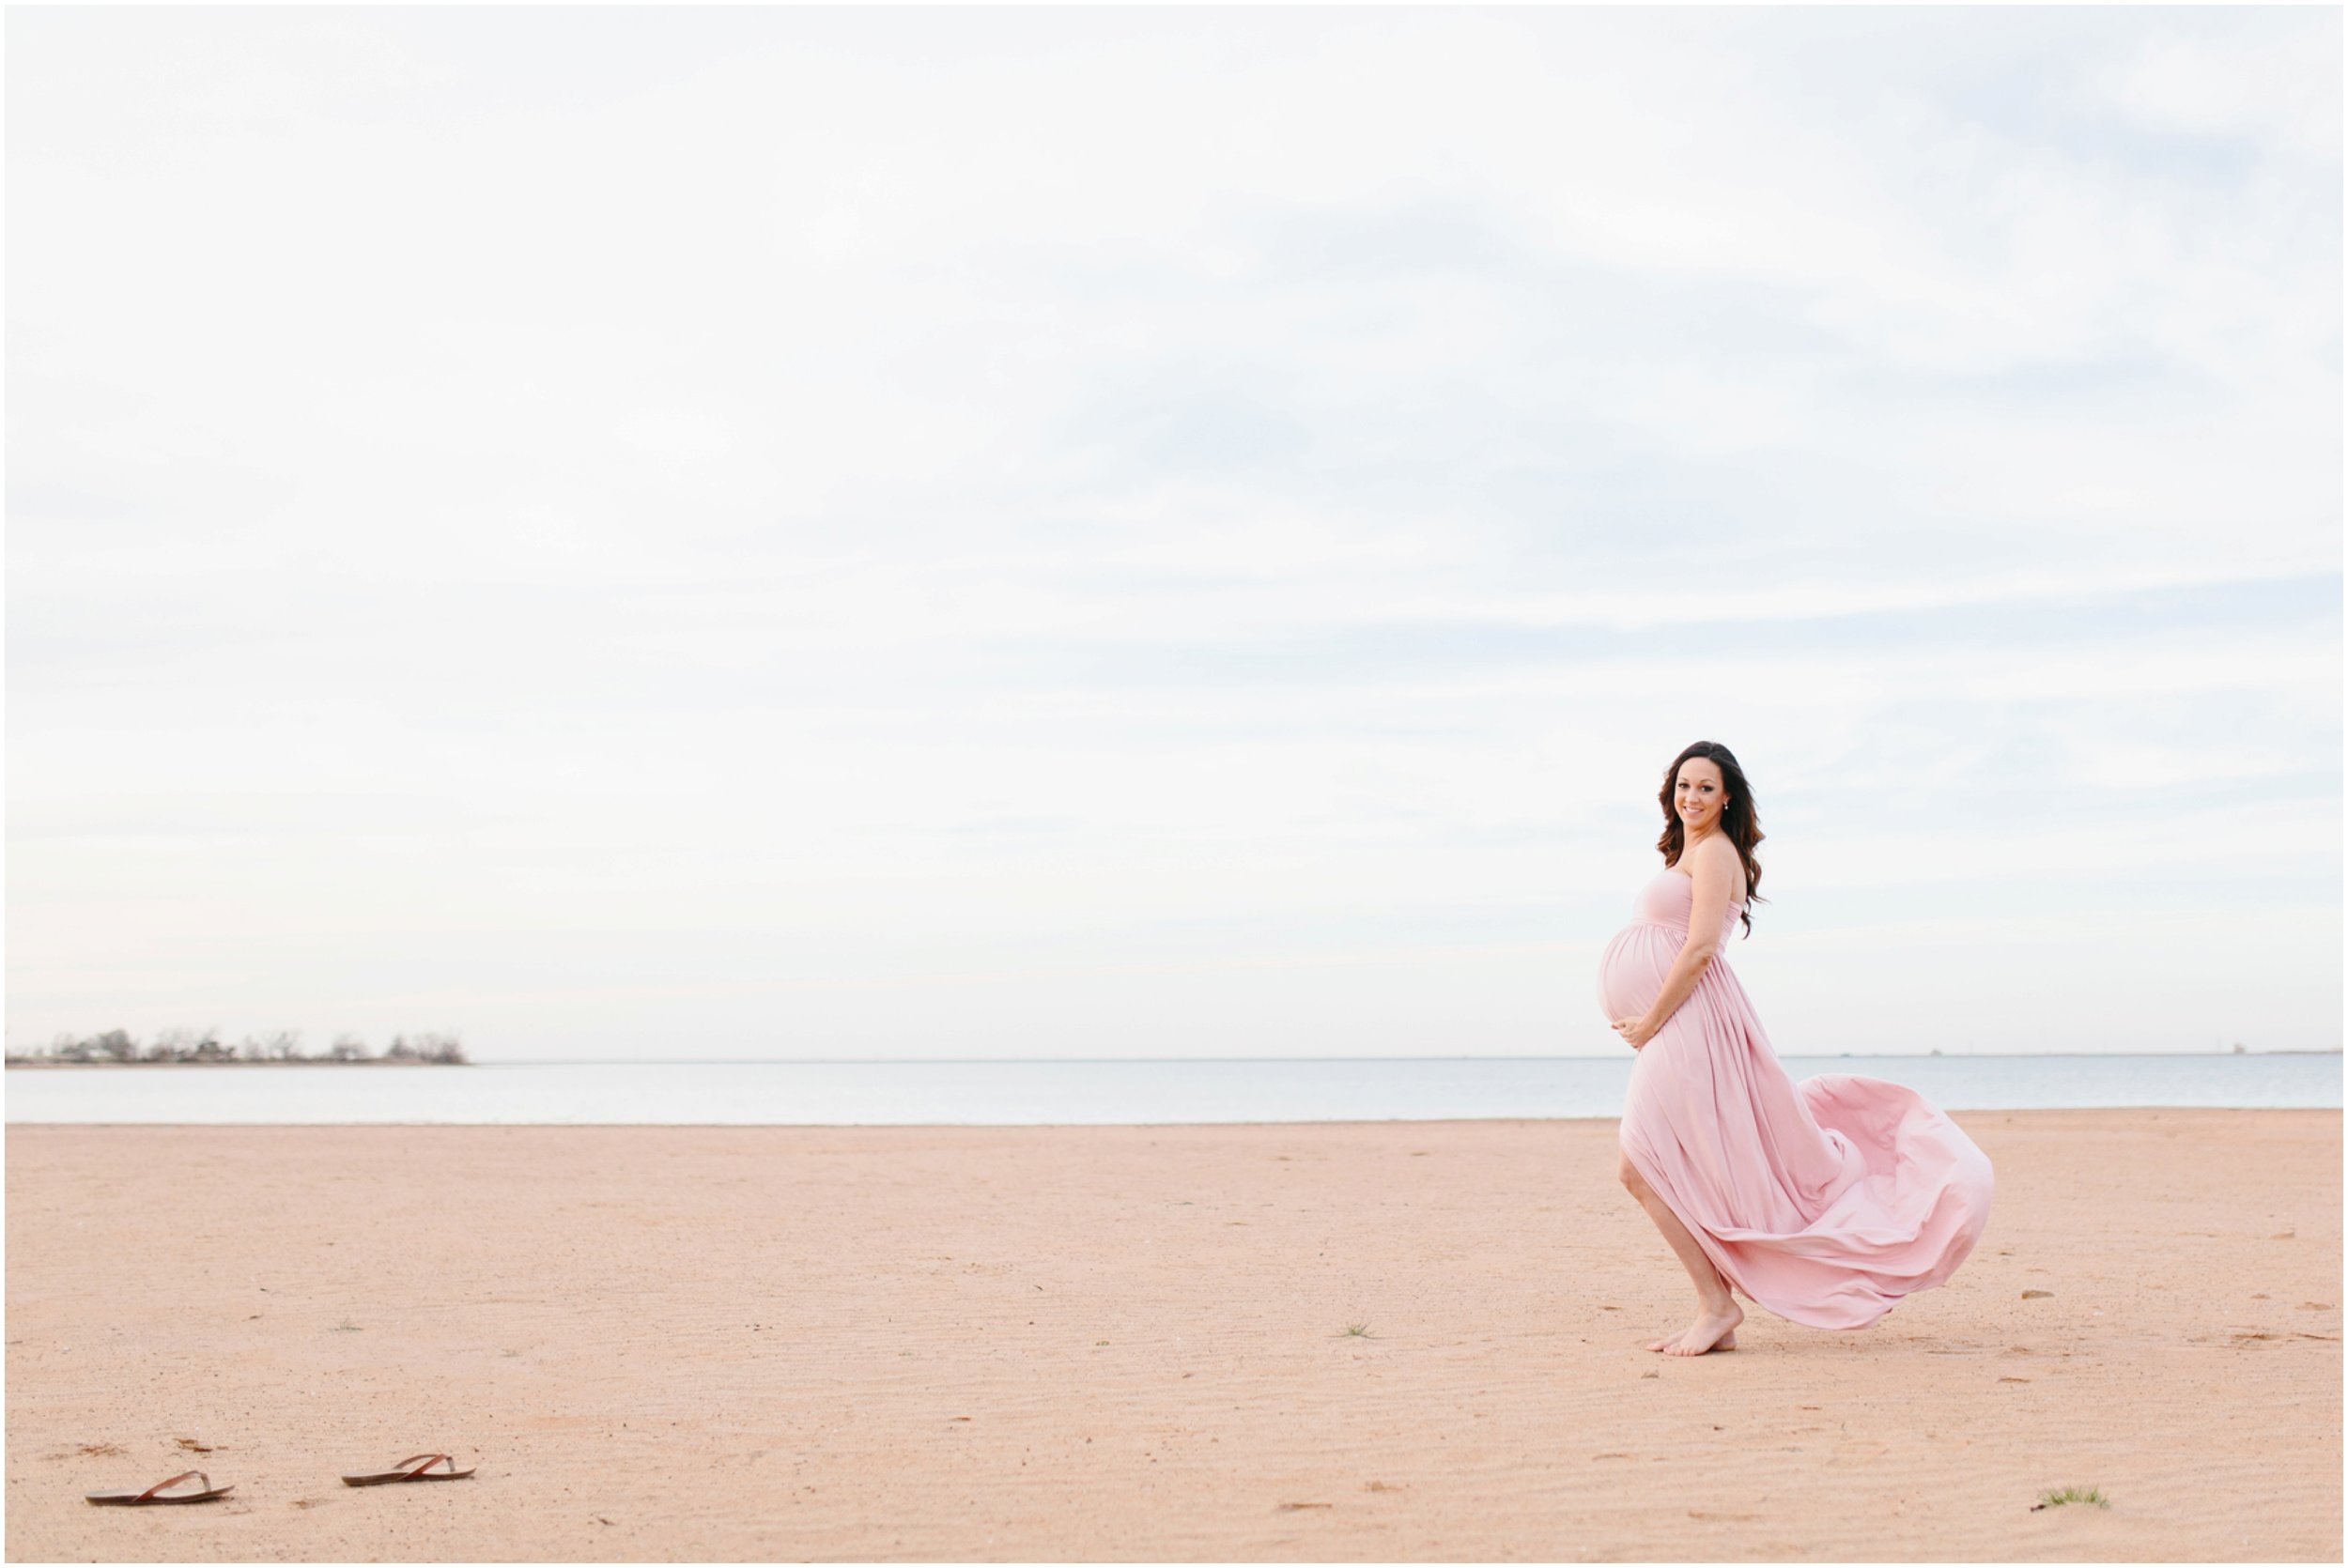 maternity flowy dress blowing in wind on beach